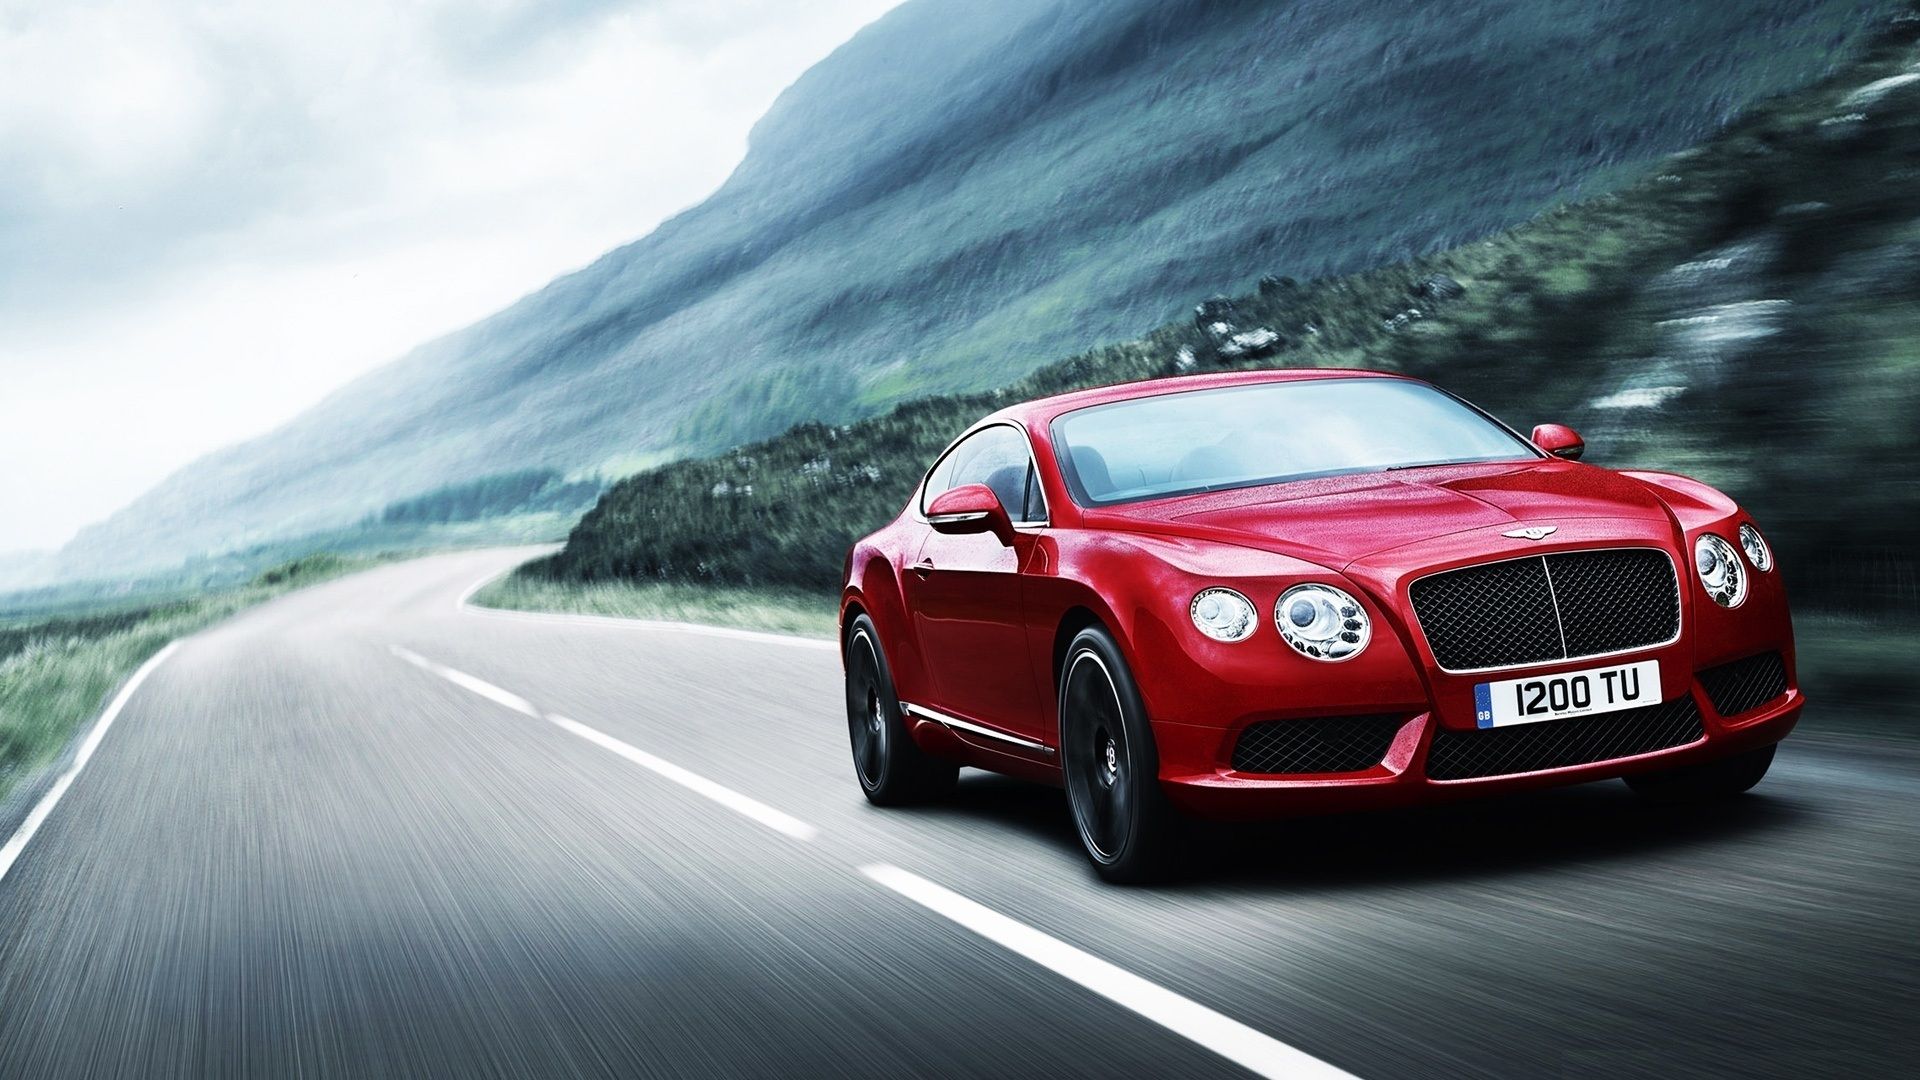 Hình nền desktop tiên tiến sử dụng trong chiếc xe Bentley Continental đỏ 4K phân giải cao miễn phí khiến bất cứ ai cũng phải mê mẩn. Thiết kế xe sang trọng kết hợp với độ phân giải cao, tạo ra một trải nghiệm đẹp mắt và hoàn hảo cho màn hình của bạn.